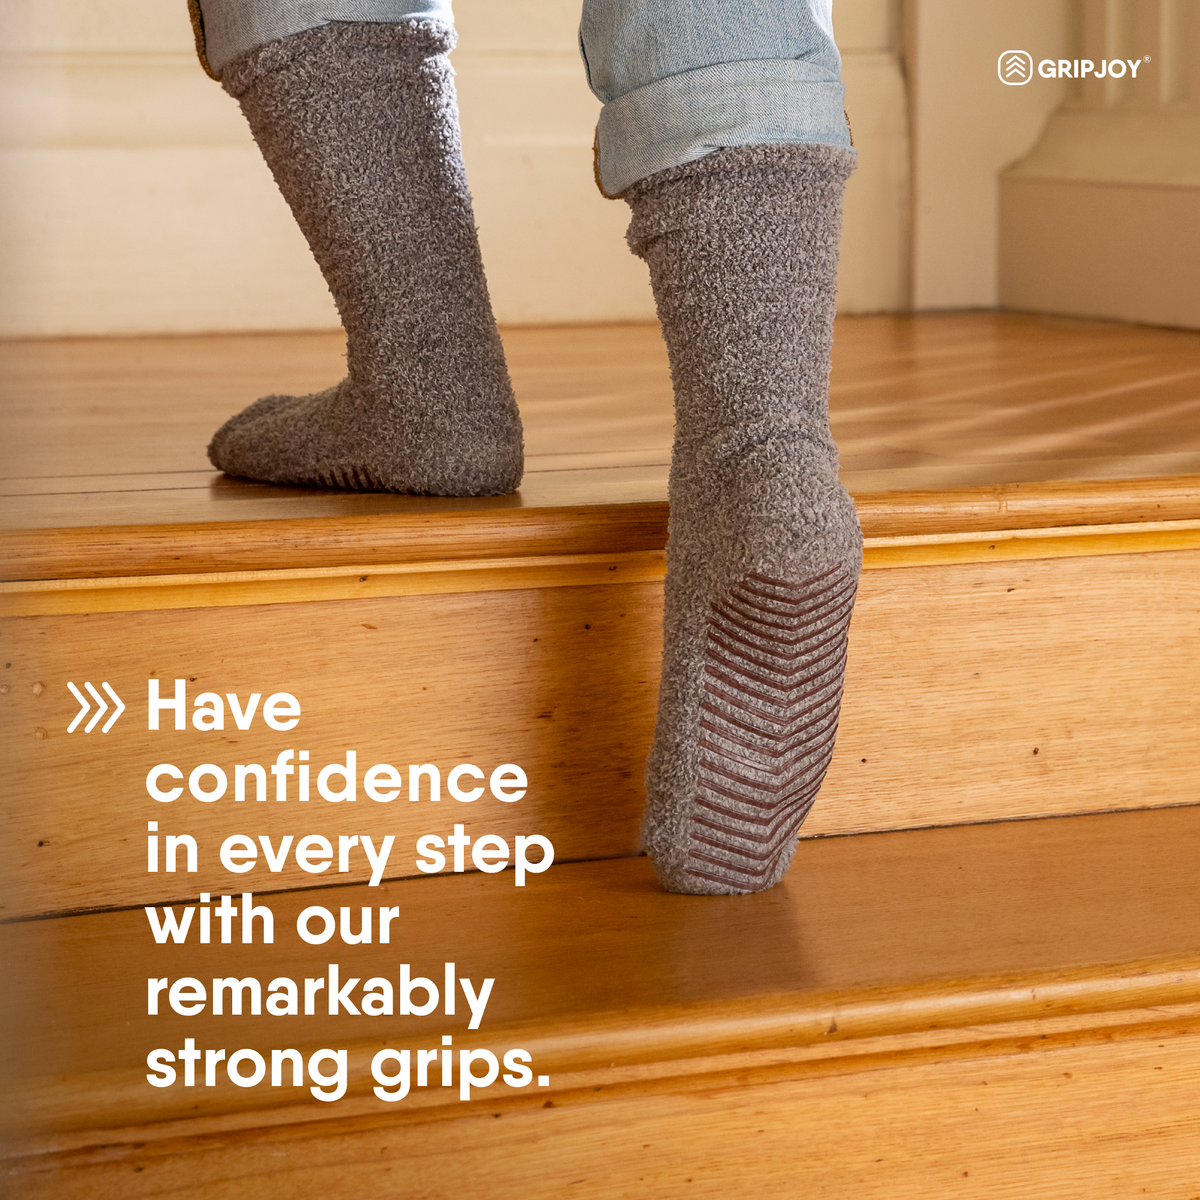 Anti-Slip Slipper Socks, 6 Pair, Gripper Bottom Indoor House Non-Skid  Hospital